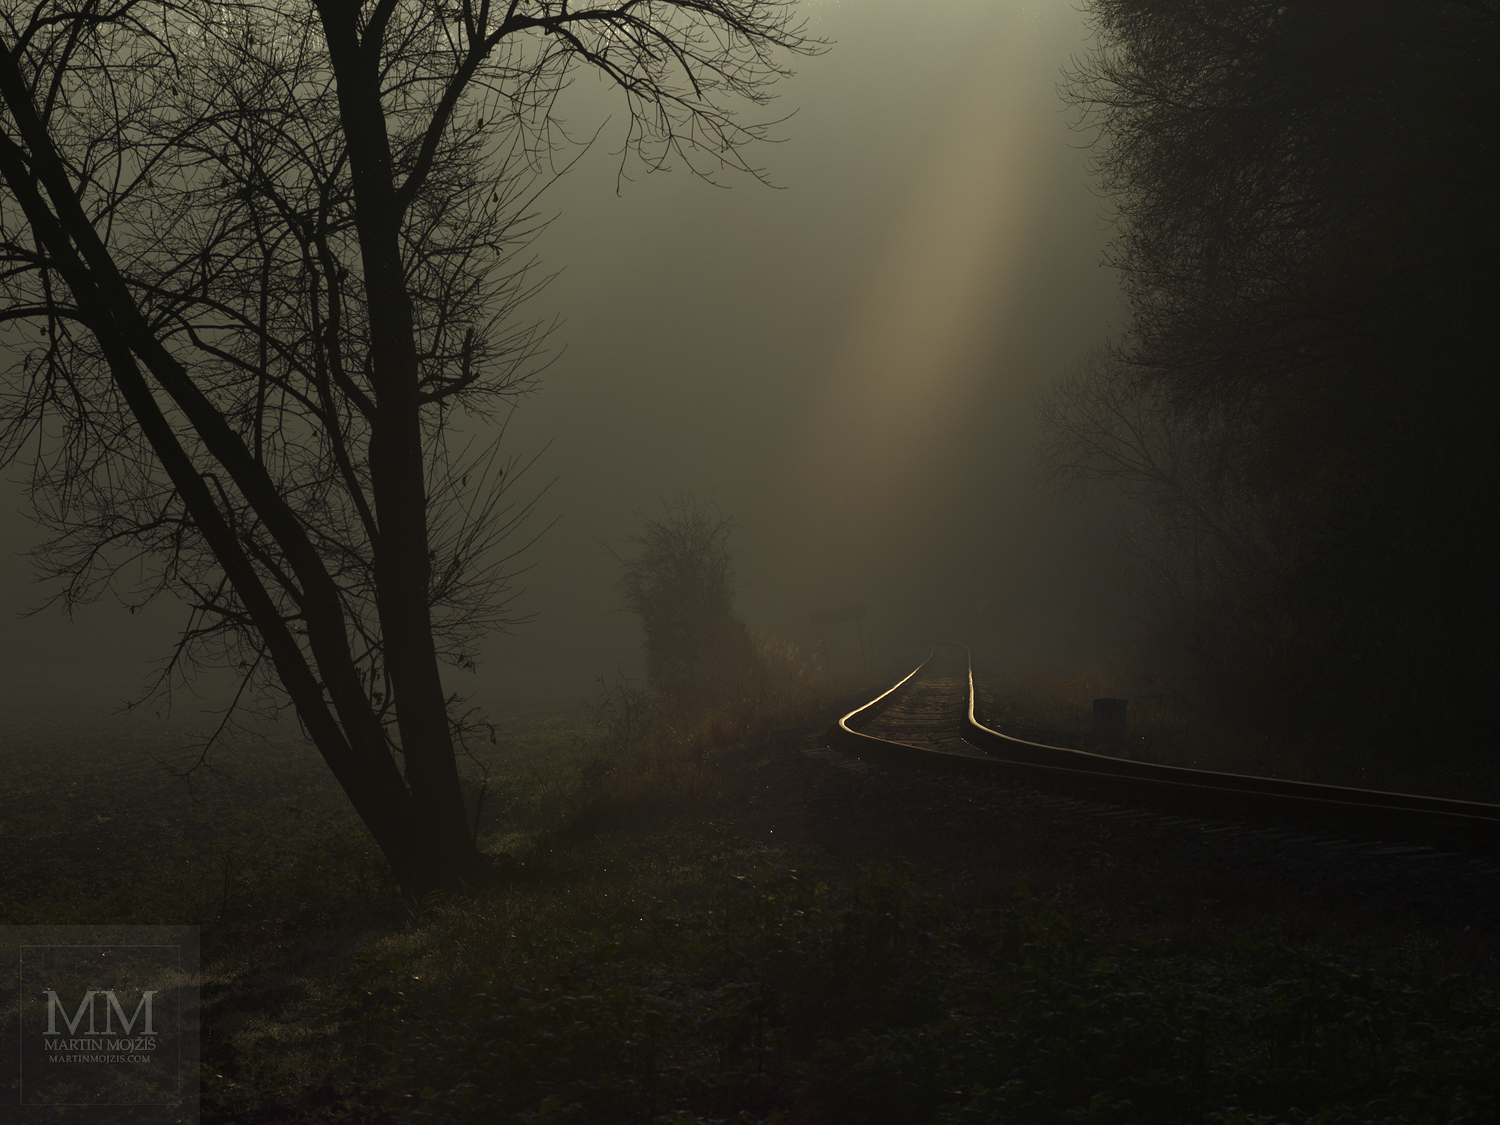 Velkoformátová umělecká fotografie krajiny s železniční tratí. Martin Mojžíš.